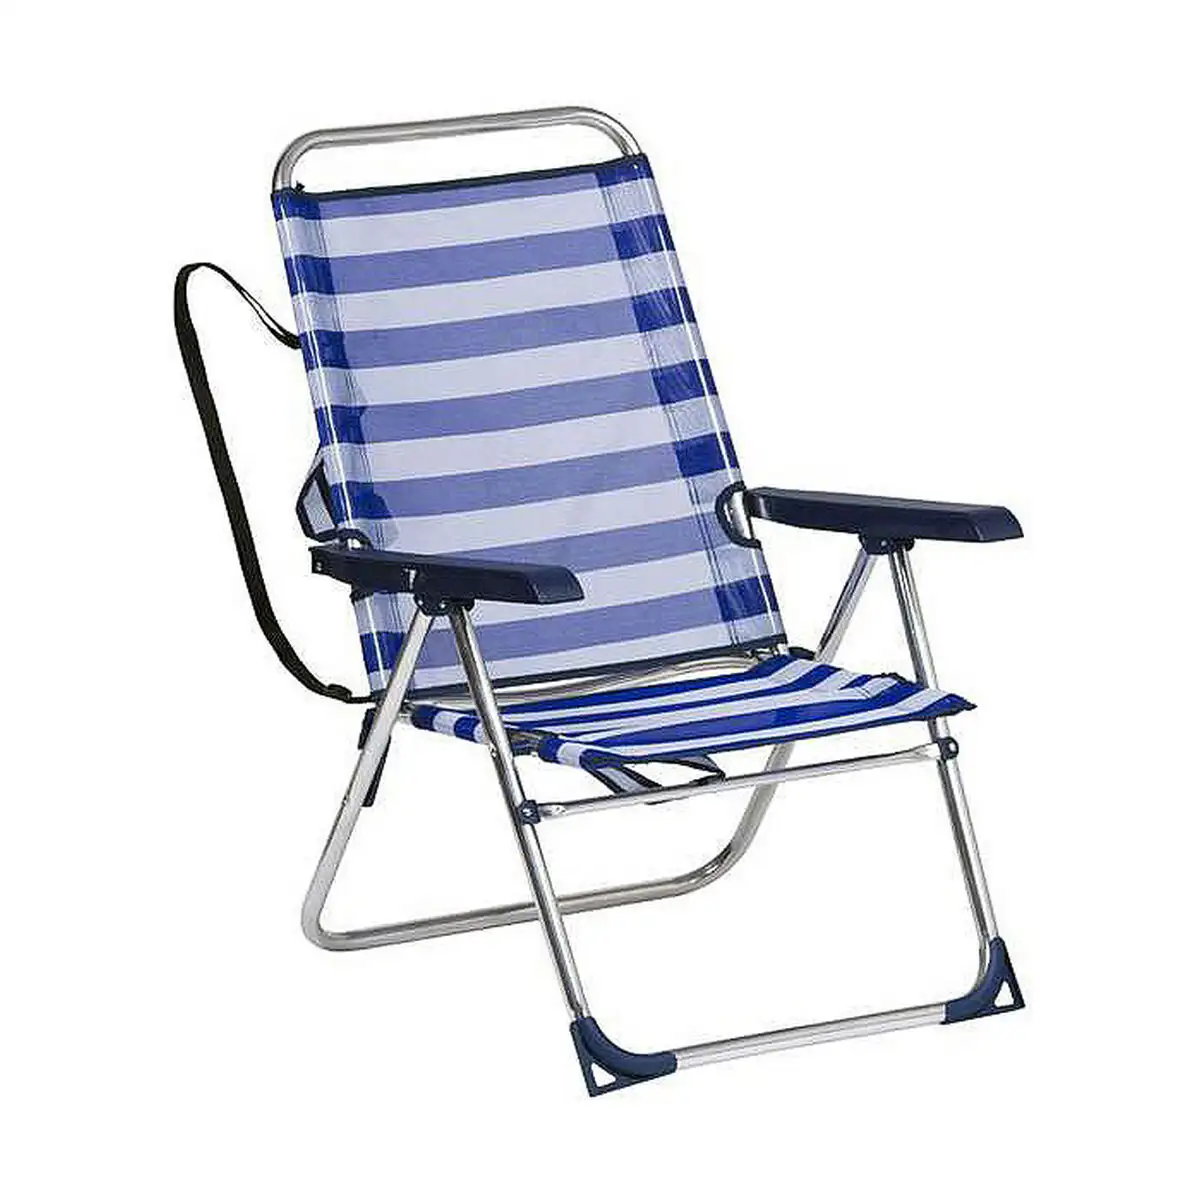 Chaise pliante alco marin blanc aluminium blue marine_6530. DIAYTAR SENEGAL - Votre Passage vers l'Élégance Accessible. Parcourez notre boutique en ligne pour trouver des produits qui vous permettent d'allier style et économies.